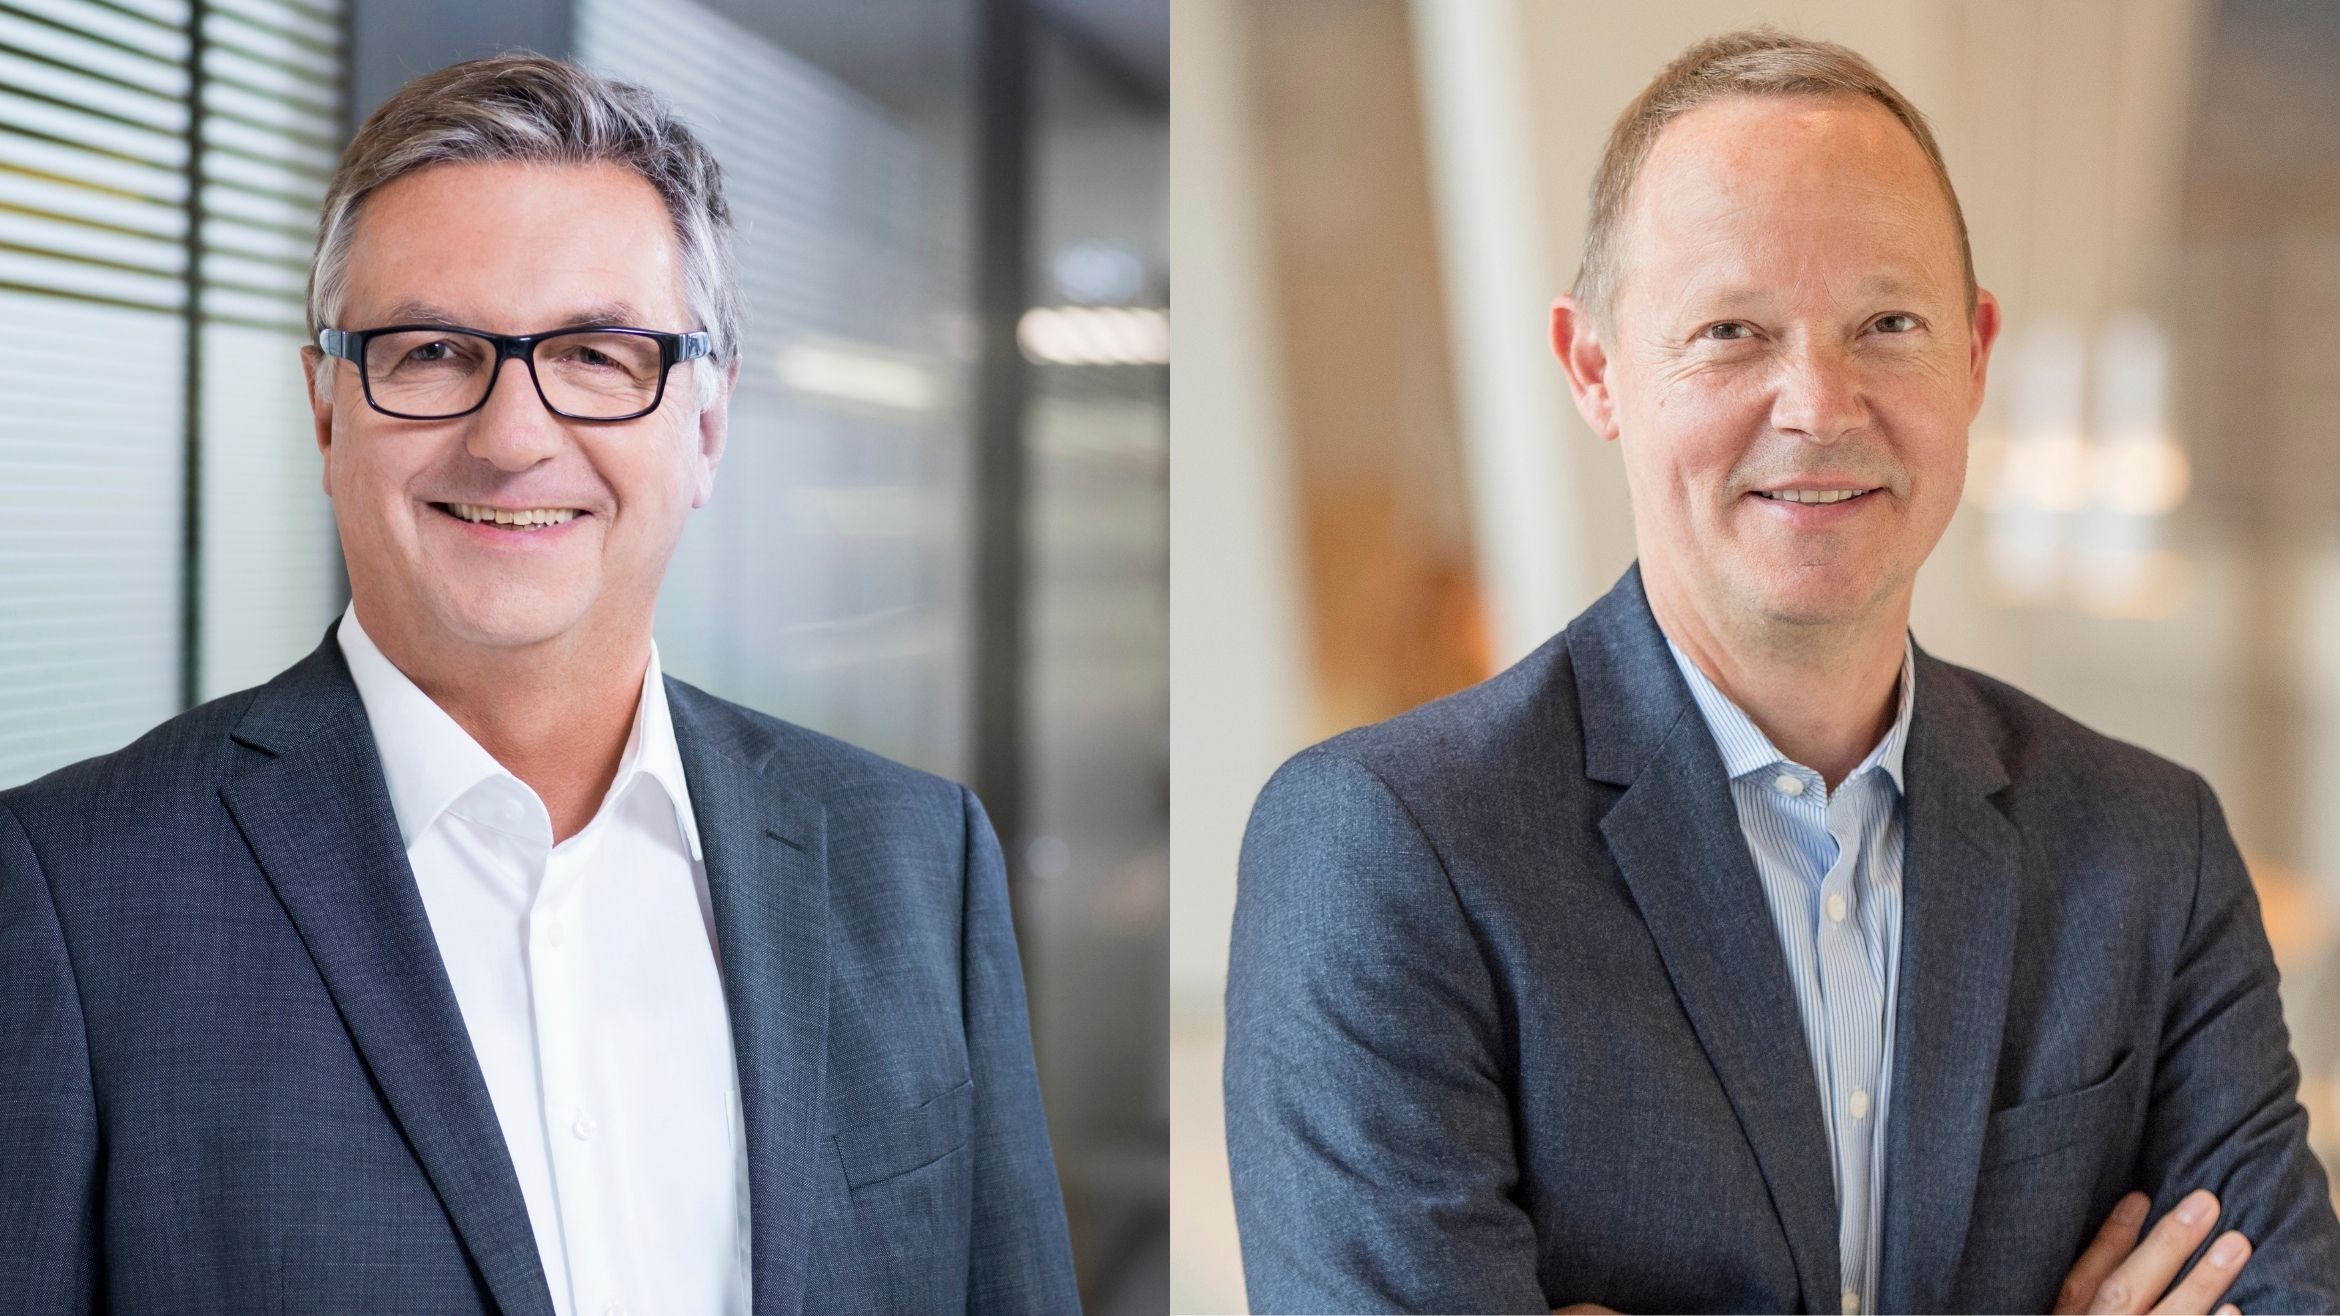 Marco Graffitti (r.) vom DPV und Mark Schrader von der Bauer Media Group sollen das Vertriebs-Joint-Venture DMV leiten – 